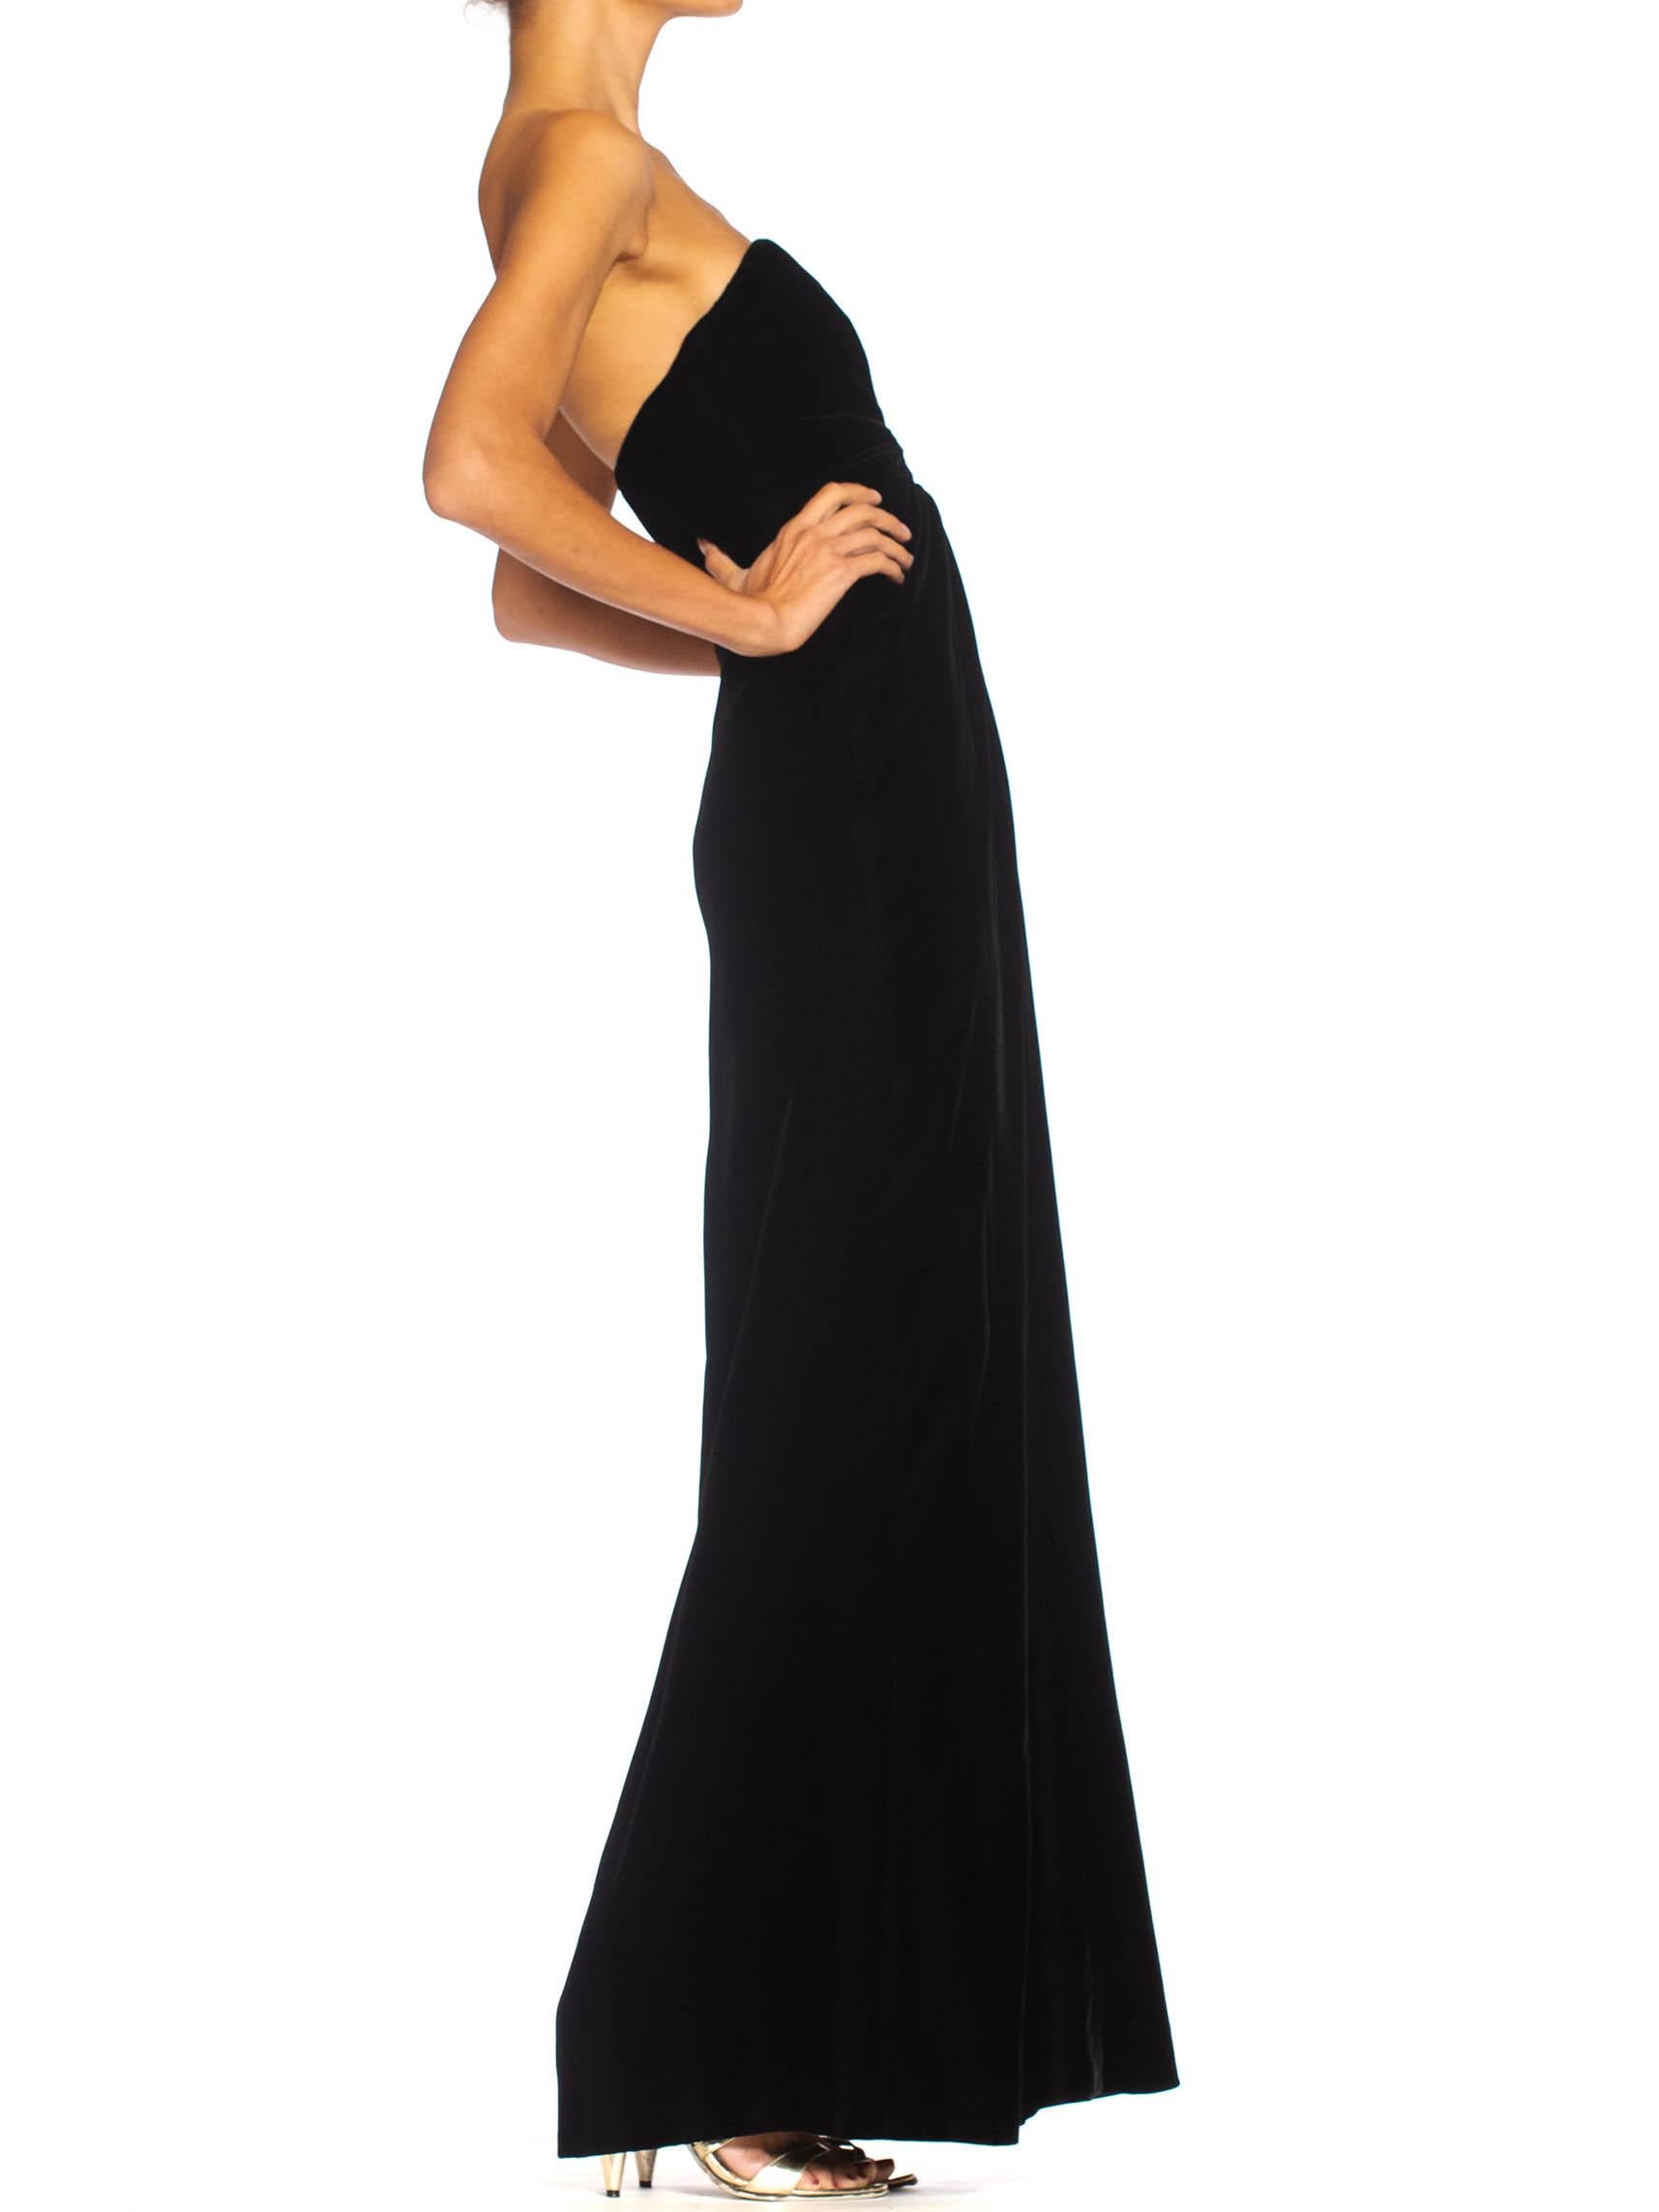 Robe bustier en velours de soie noire haute couture YVES SAINT LAURENT, années 1980 Pour femmes en vente